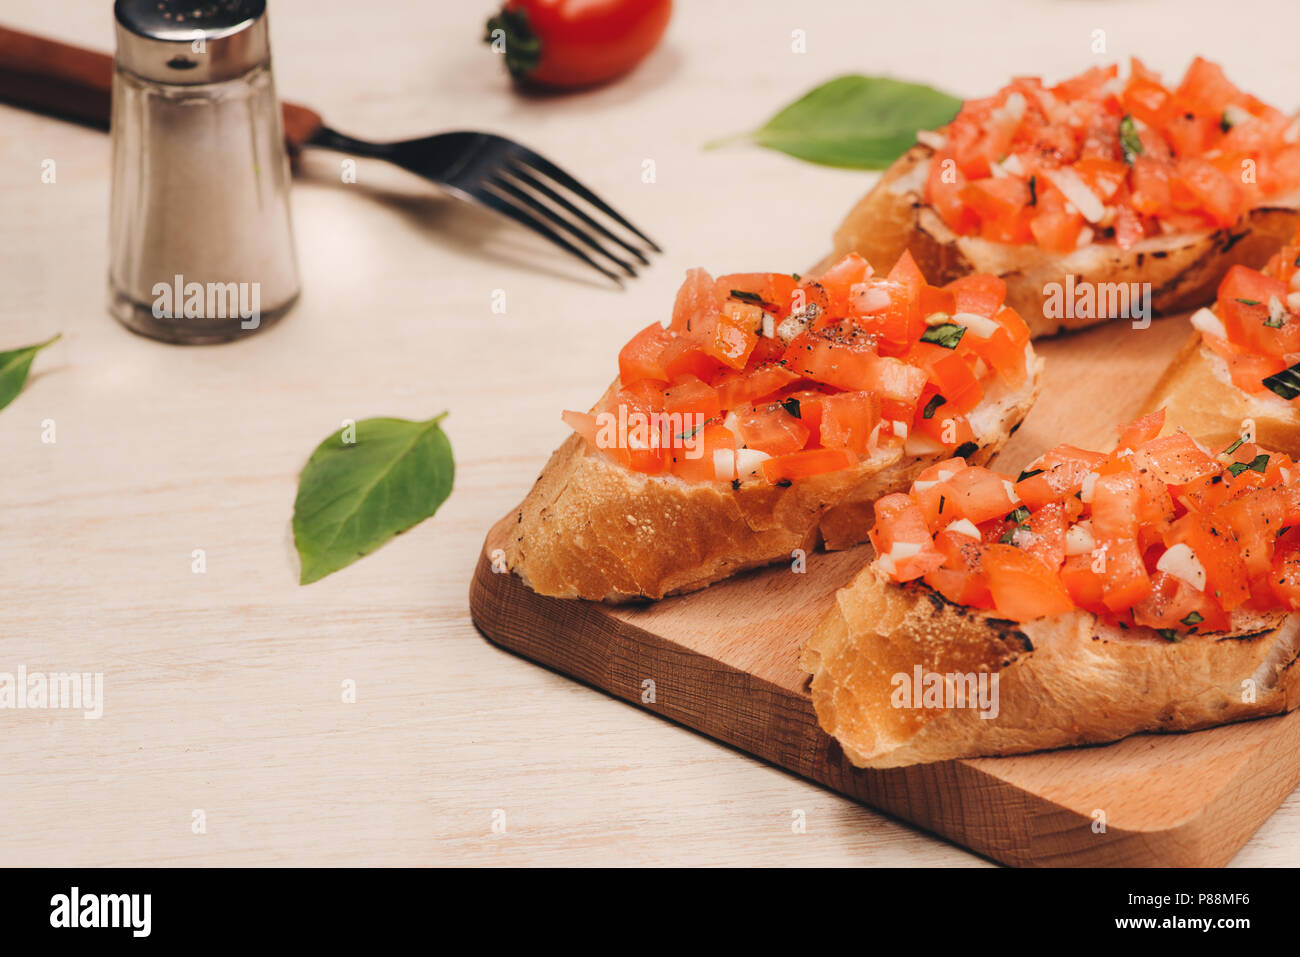 Bruschetta italienne de tomates rôties, de mozzarella et d'herbes sur une planche à découper Banque D'Images